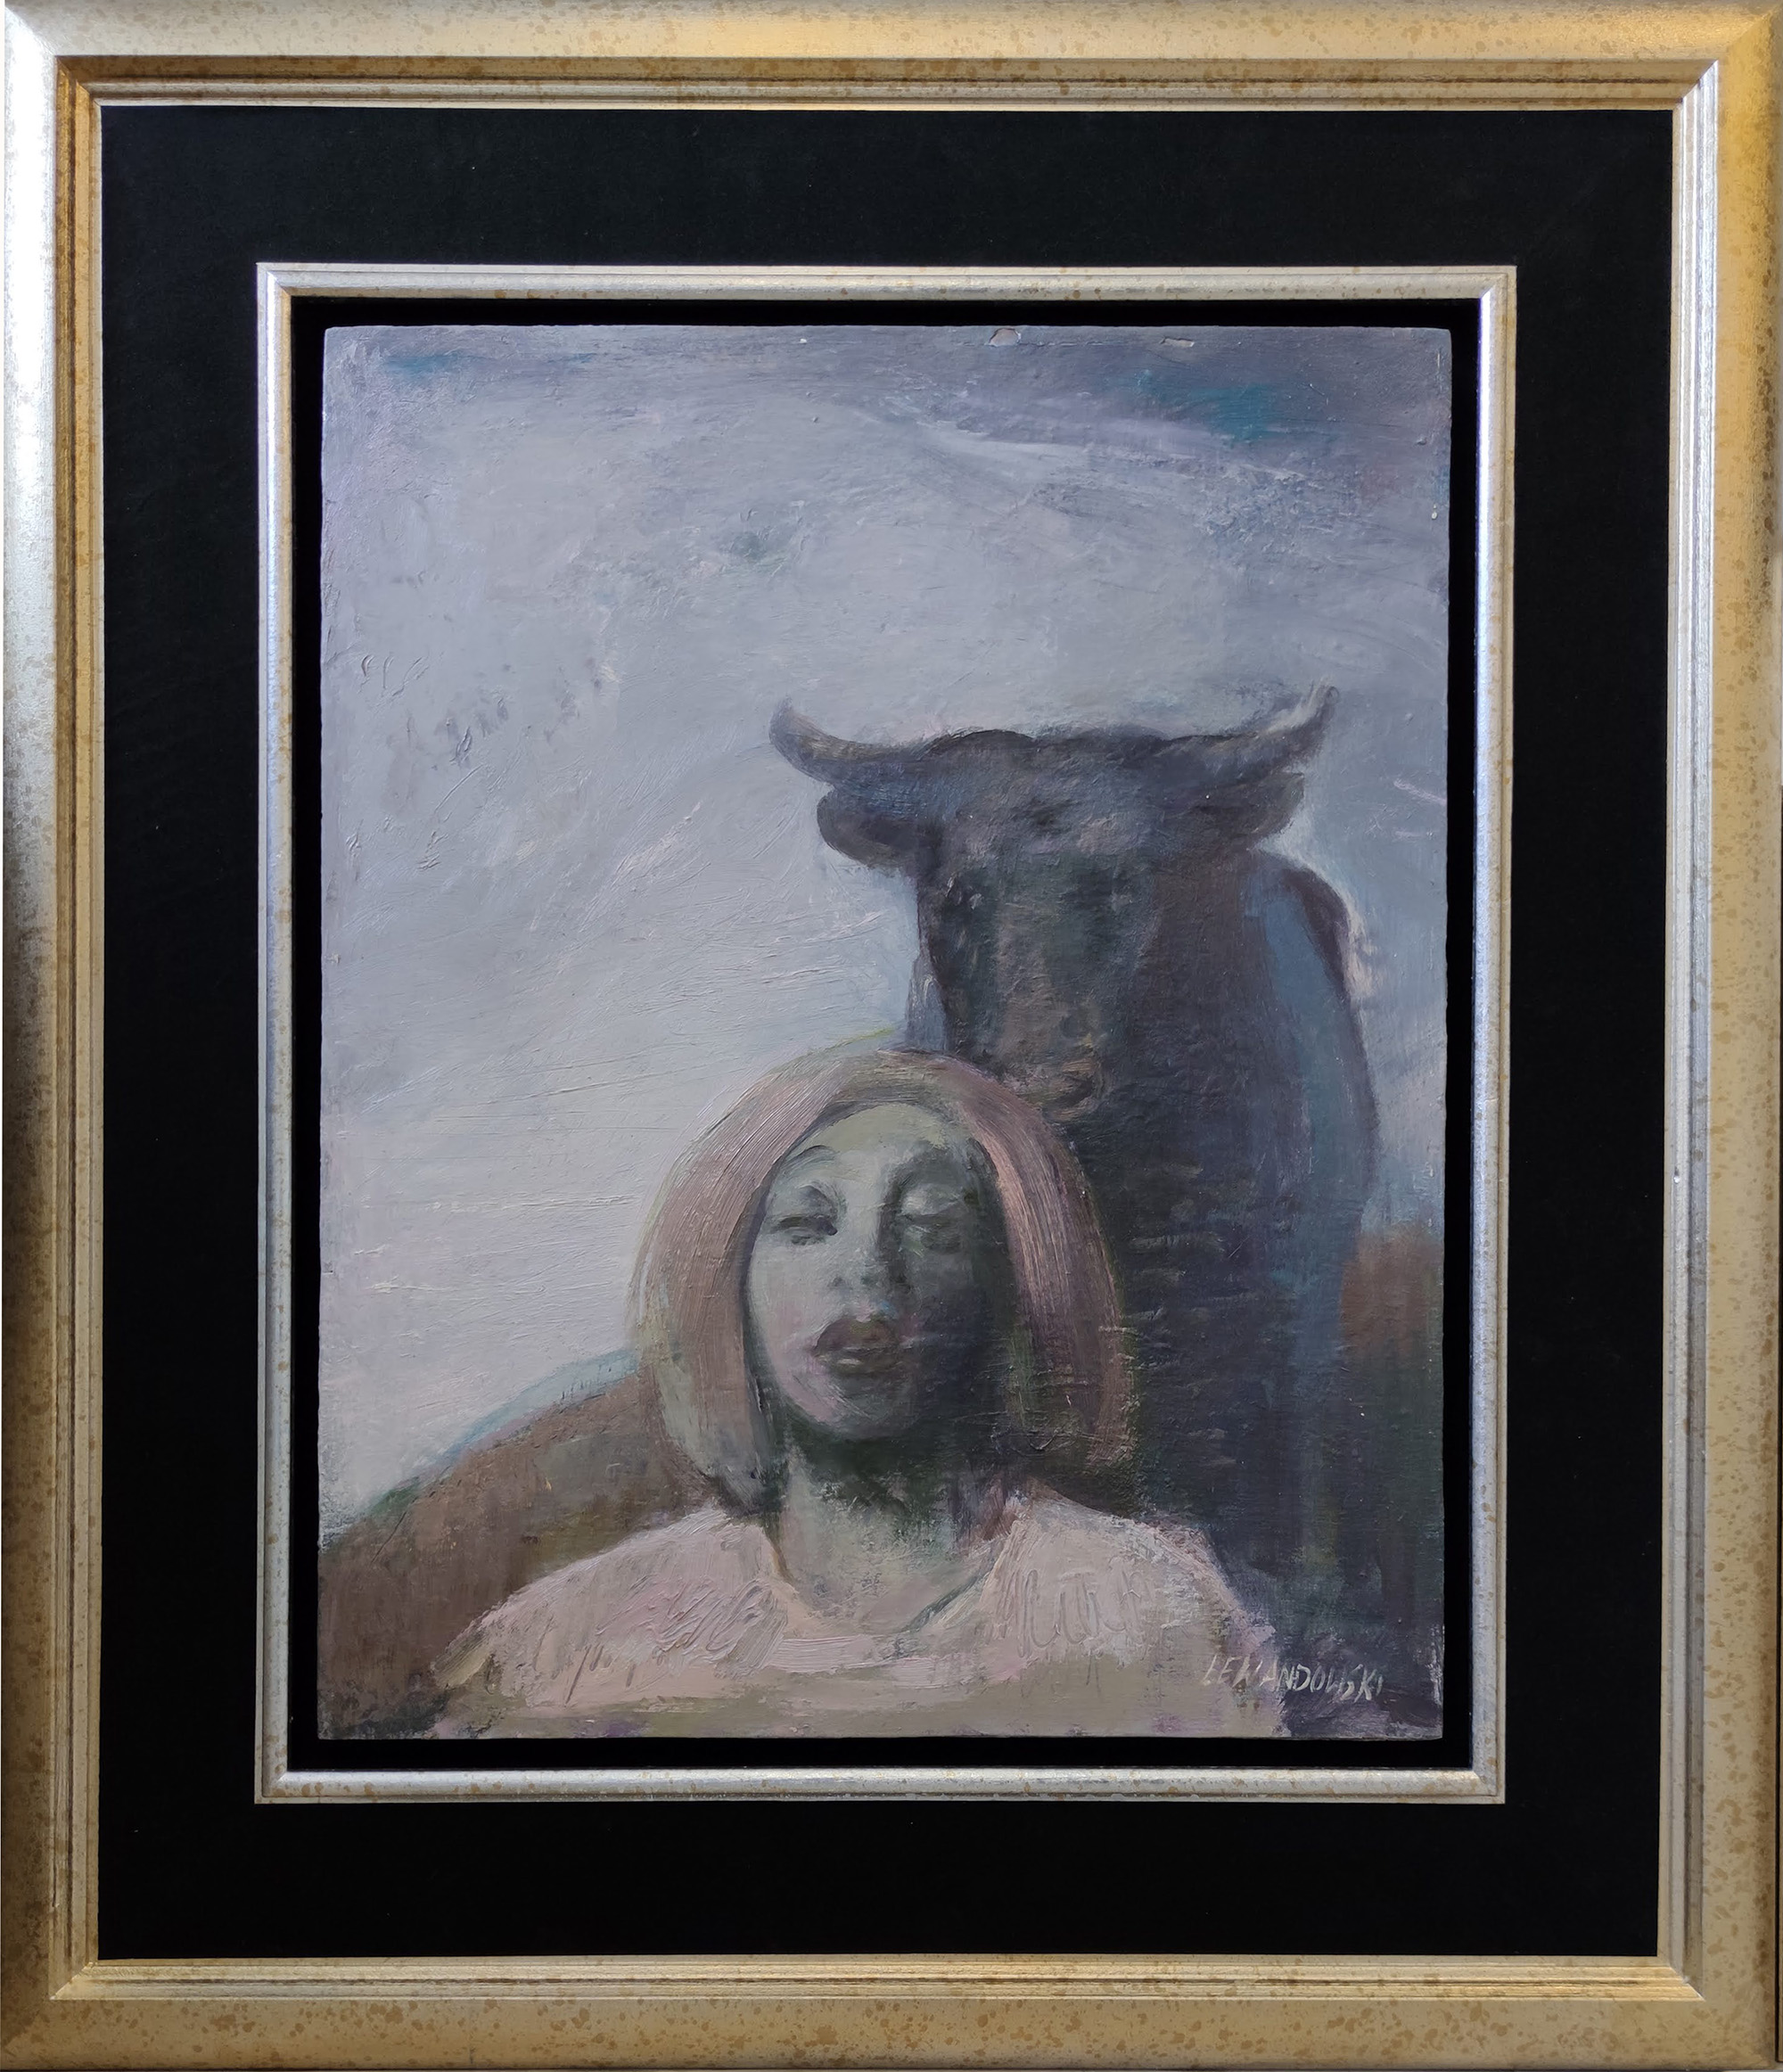 Janusz Lewandowski, „Widnokrąg”, olej na płycie, 48×60 cm, cena 32000 zł